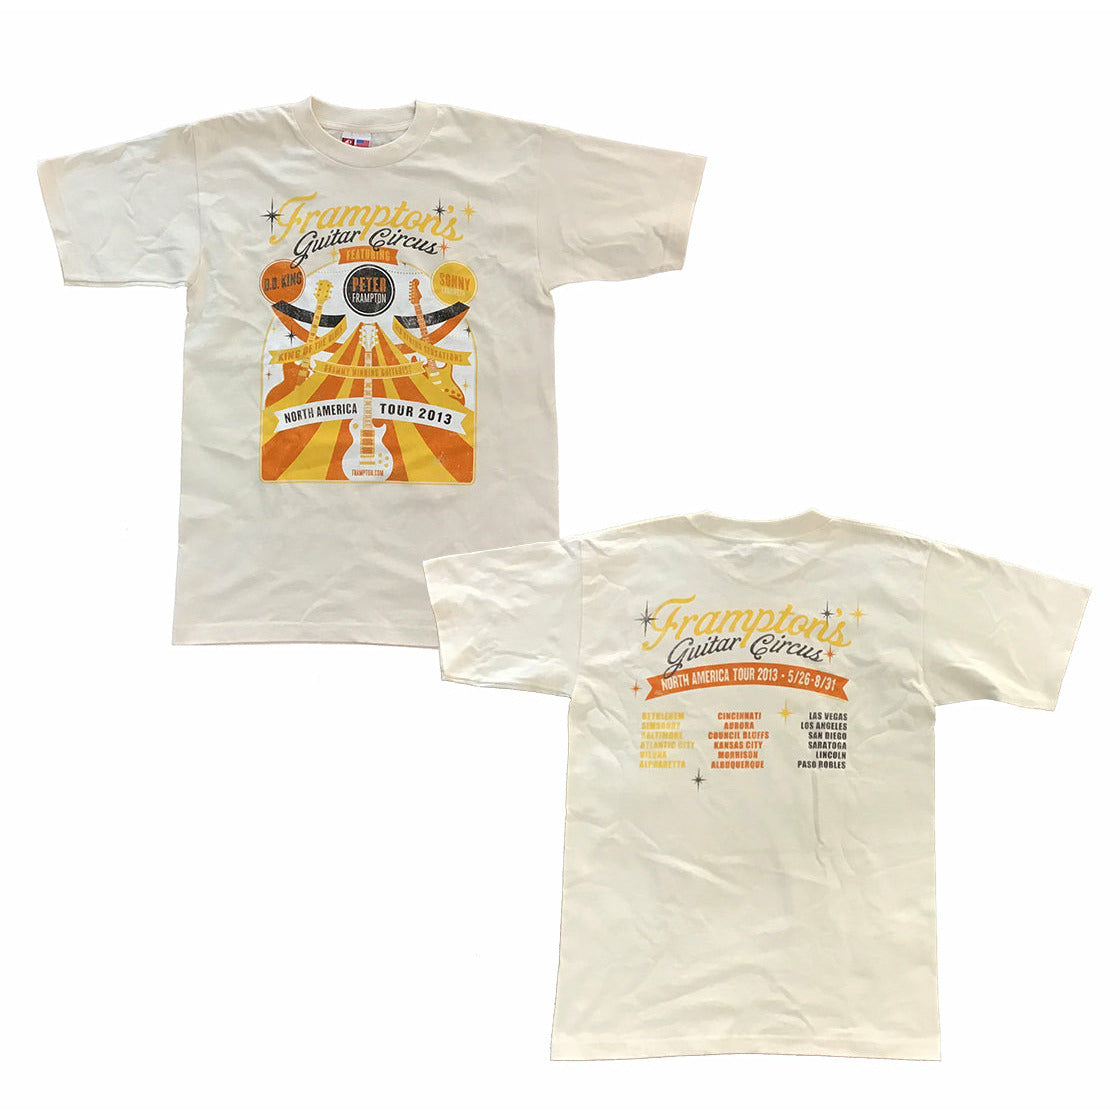 Peter Frampton - Guitar Circus 2013 Tour T-Shirt